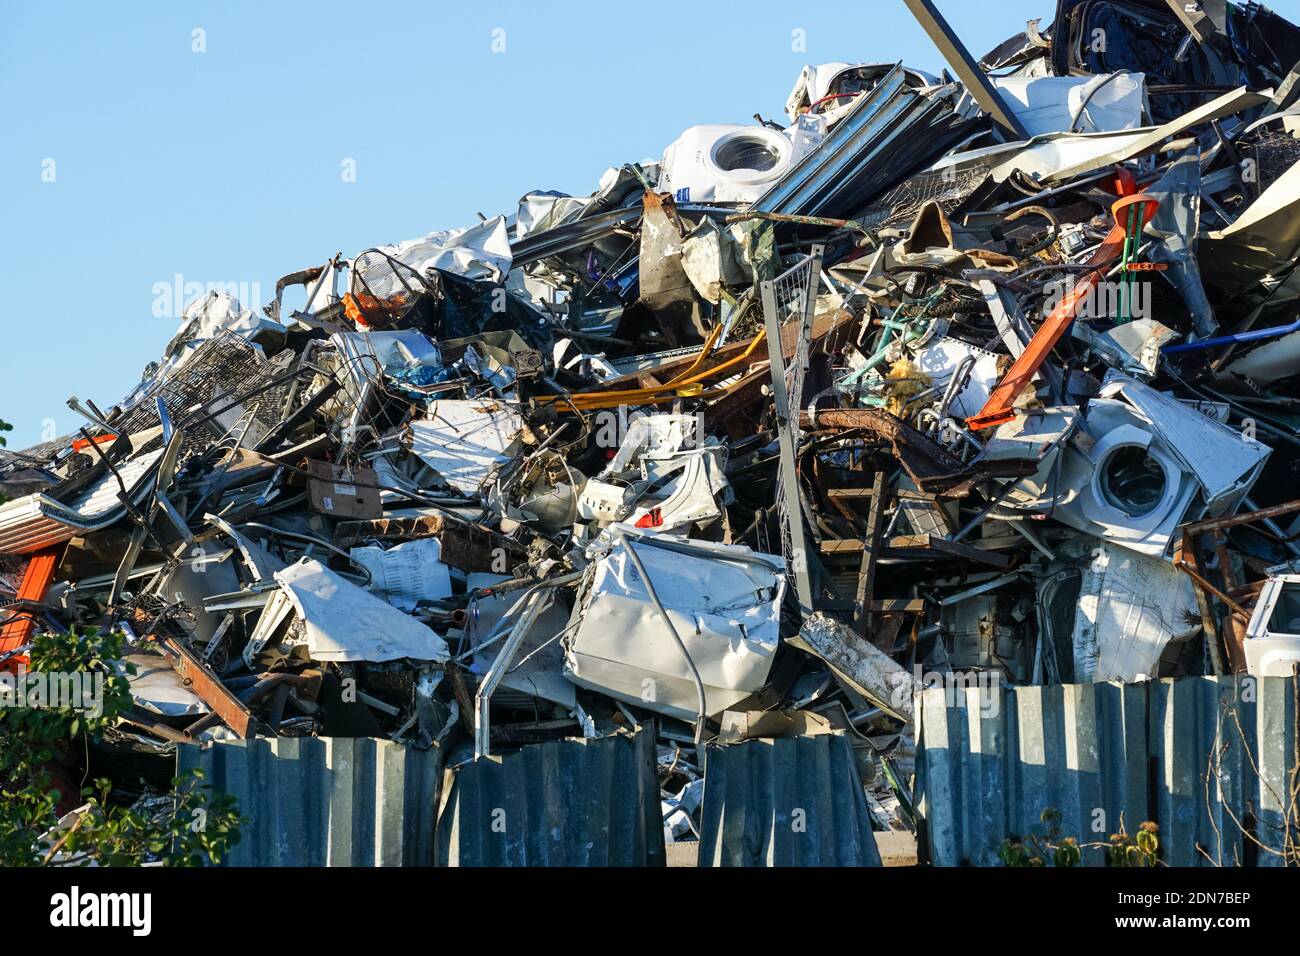 Big pile of scrap metal Stock Photo